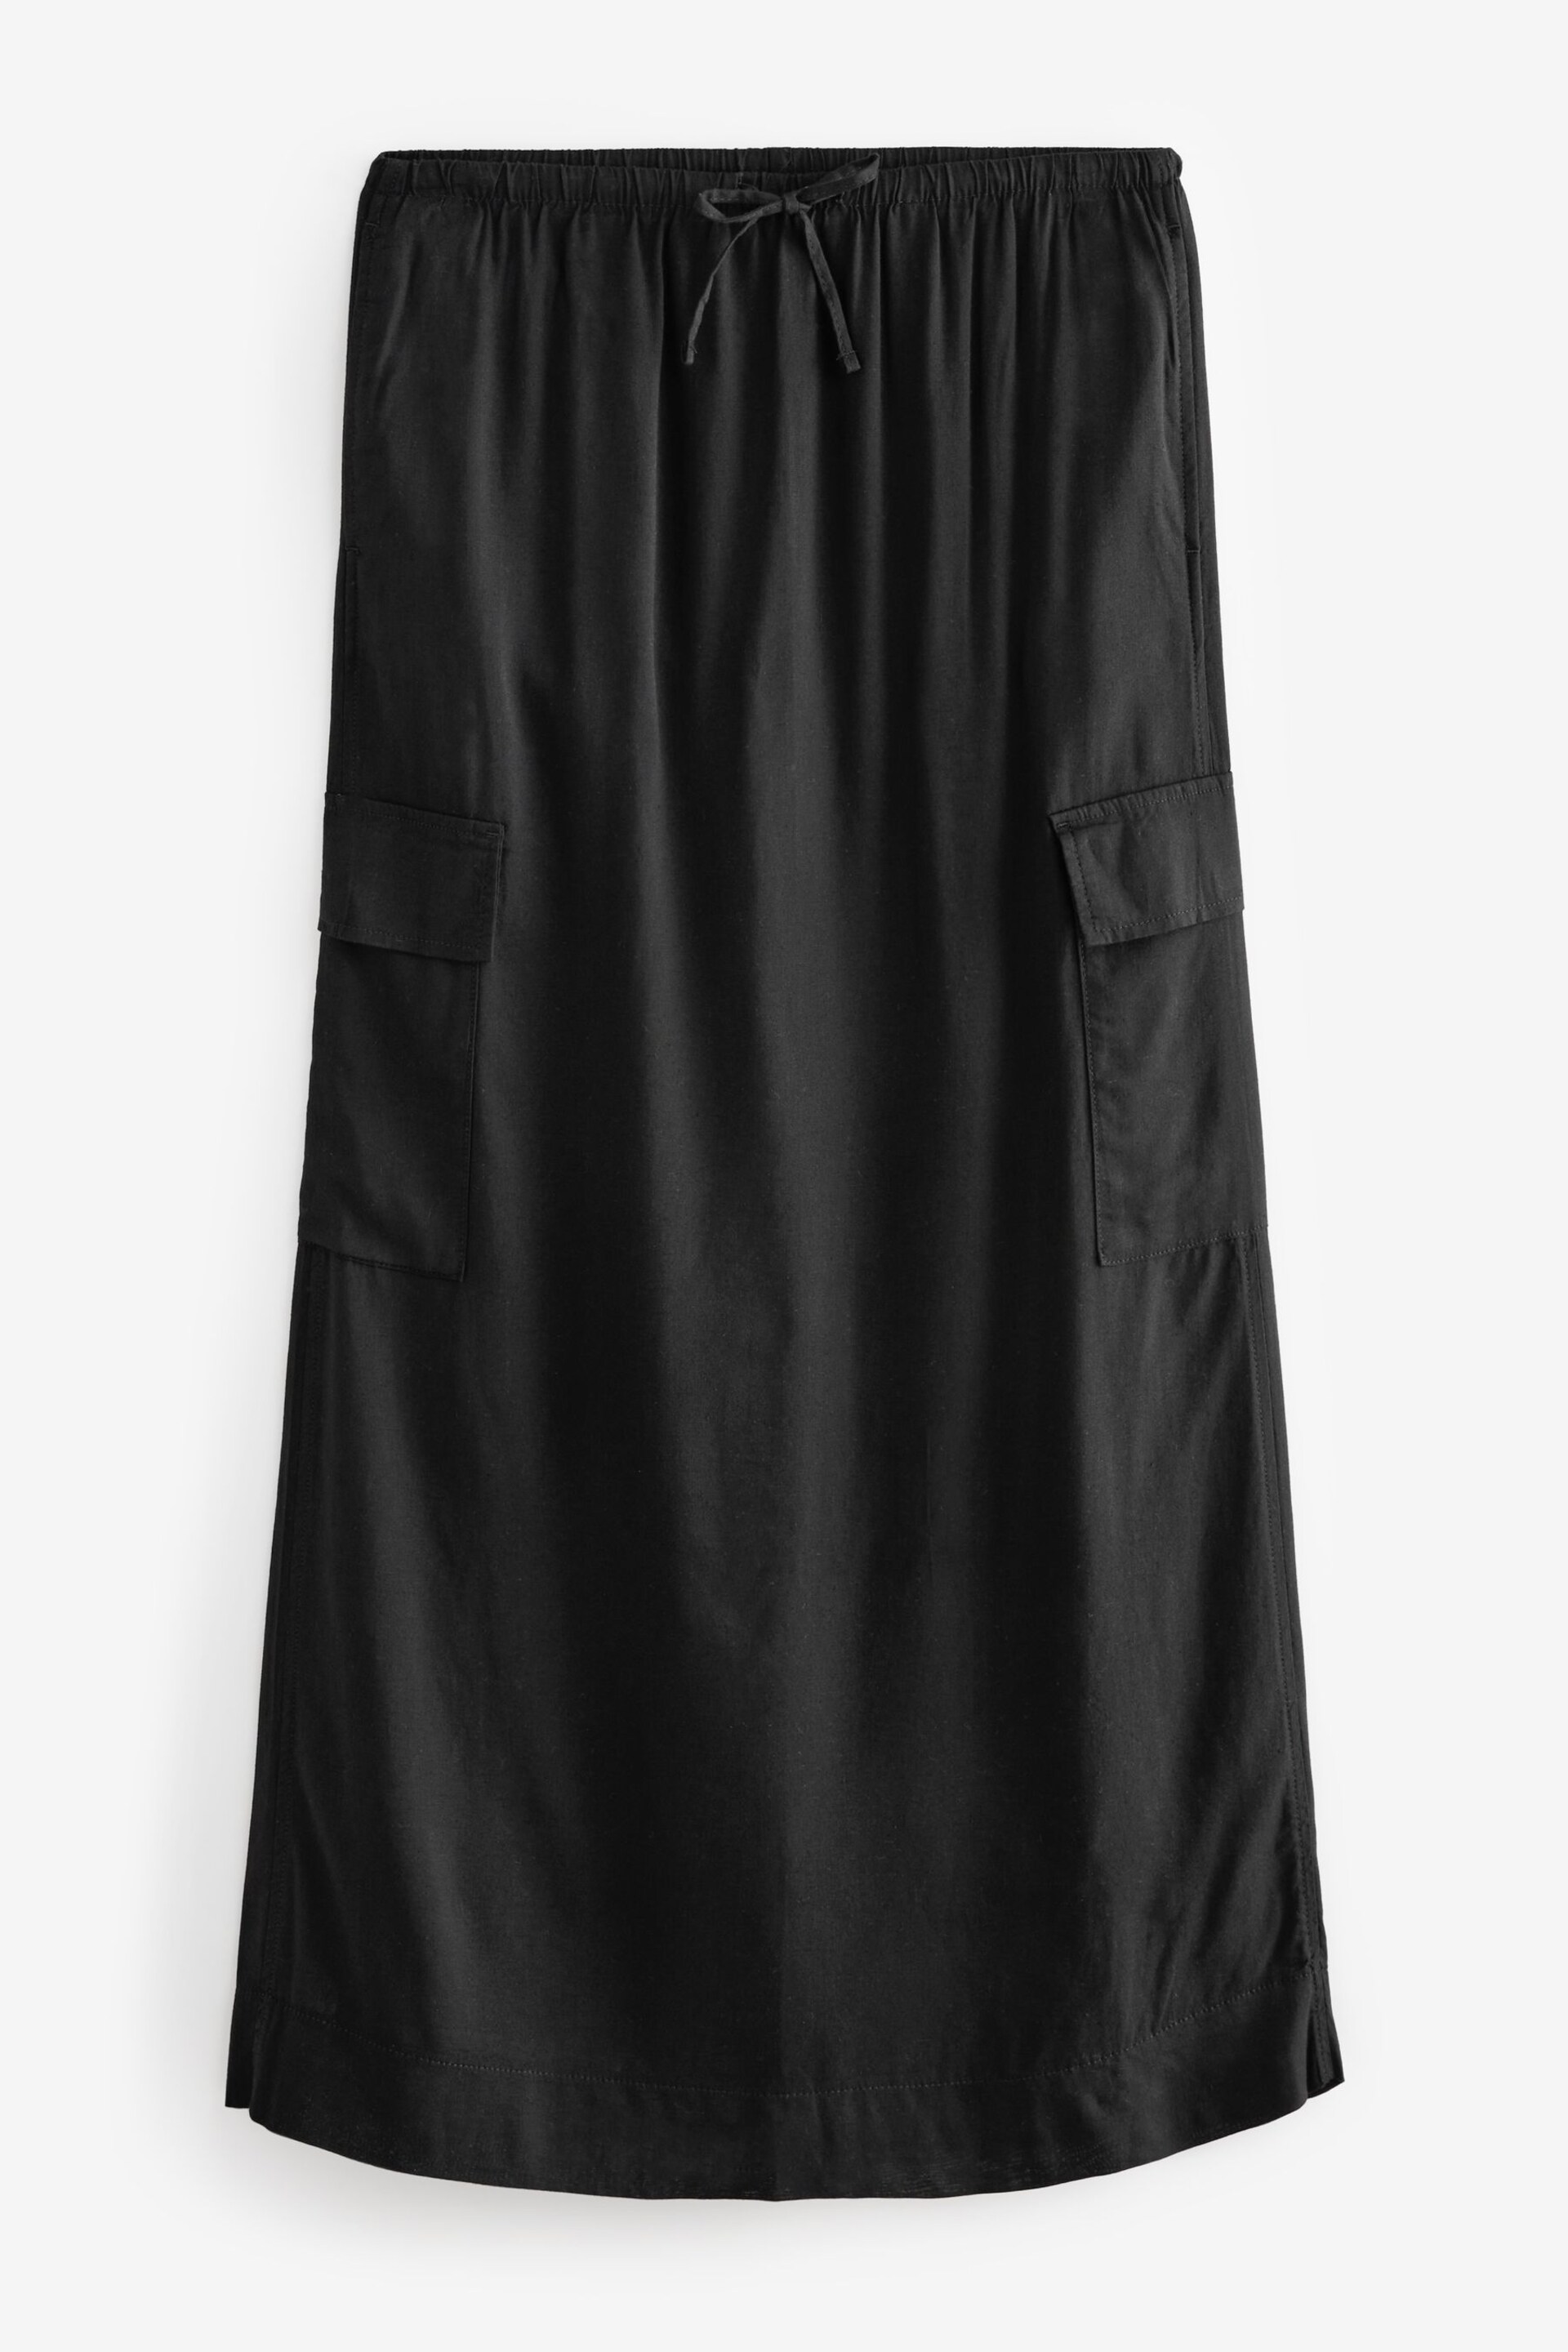 Black Column Midi Skirt with Linen - Image 5 of 7